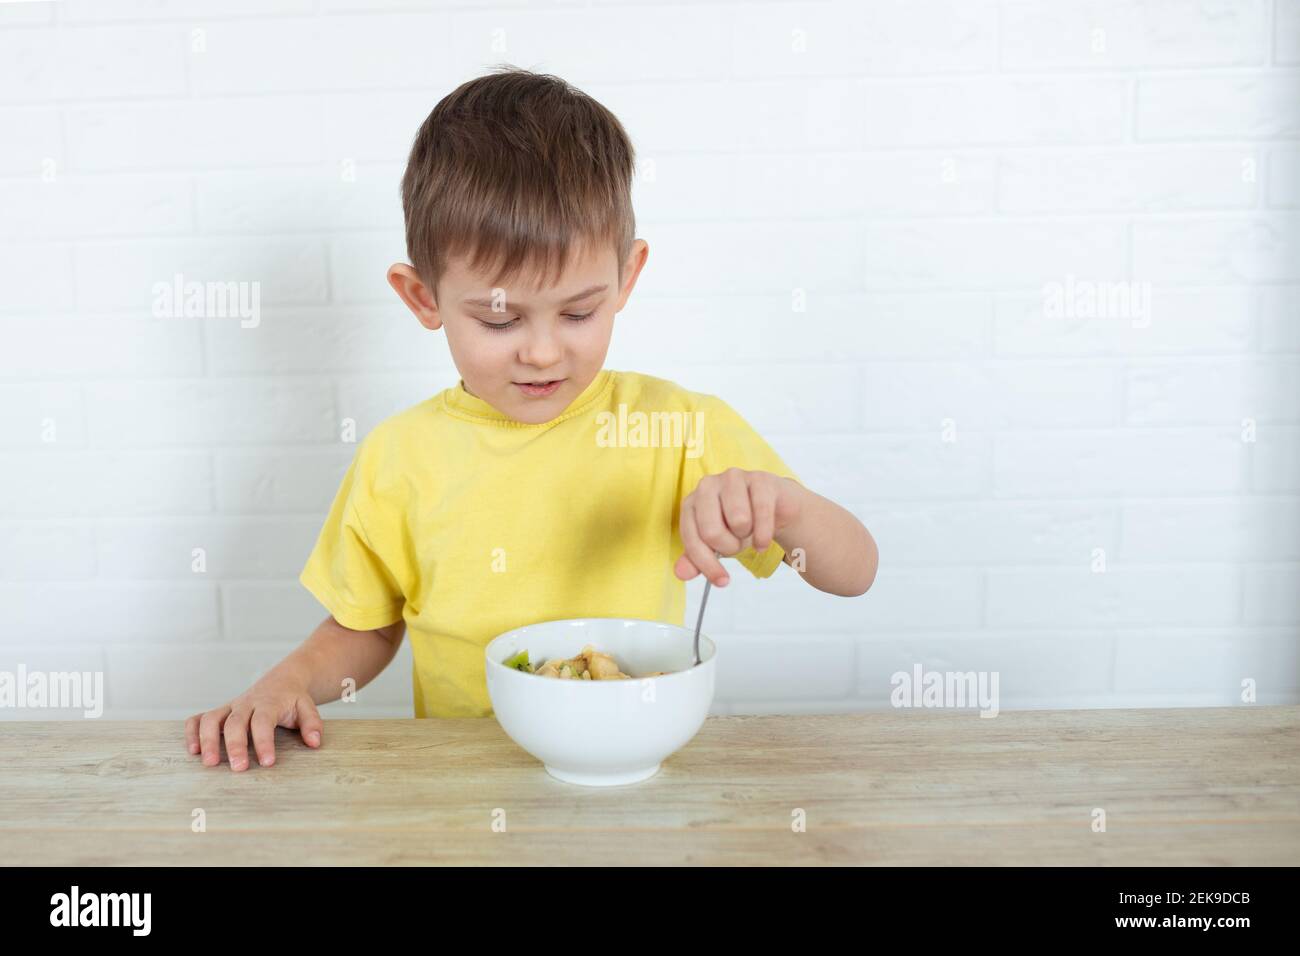 Kleiner Linkshänder Junge in einem gelben T-Shirt essen Obstsalat und lächeln. Kinder gesunde Ernährung Konzept. Ernährungsprodukte. Gesundheitswesen Stockfoto